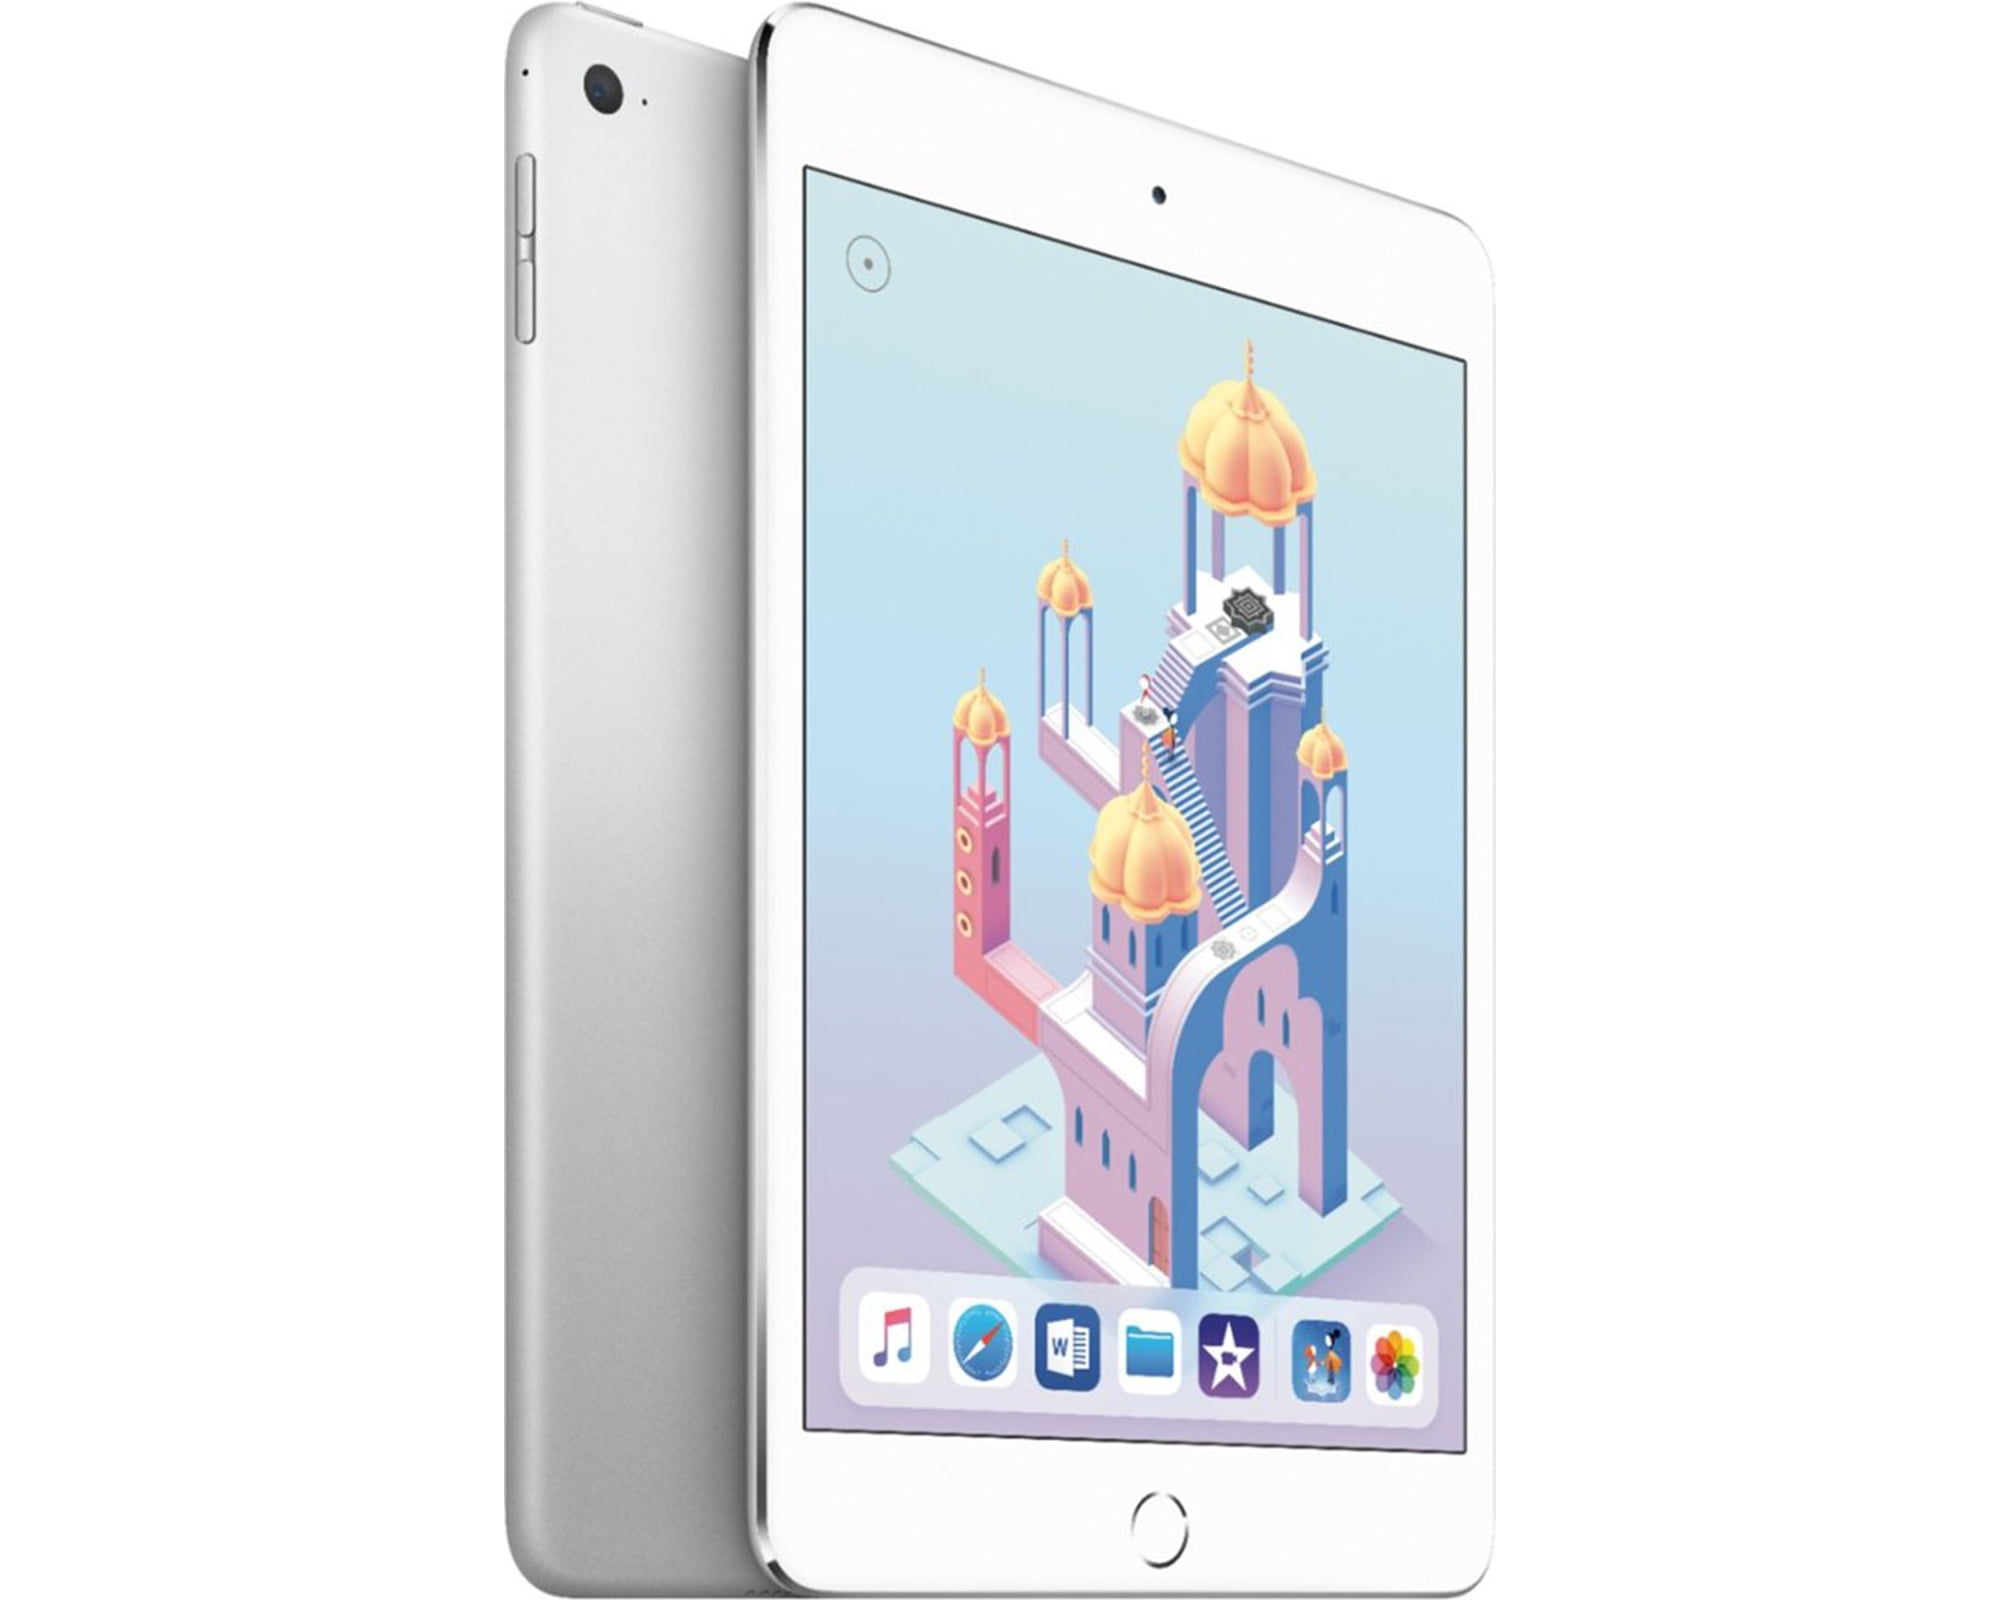 iPad mini 4 Wi-Fi 16GB - Space Gray - Walmart.com